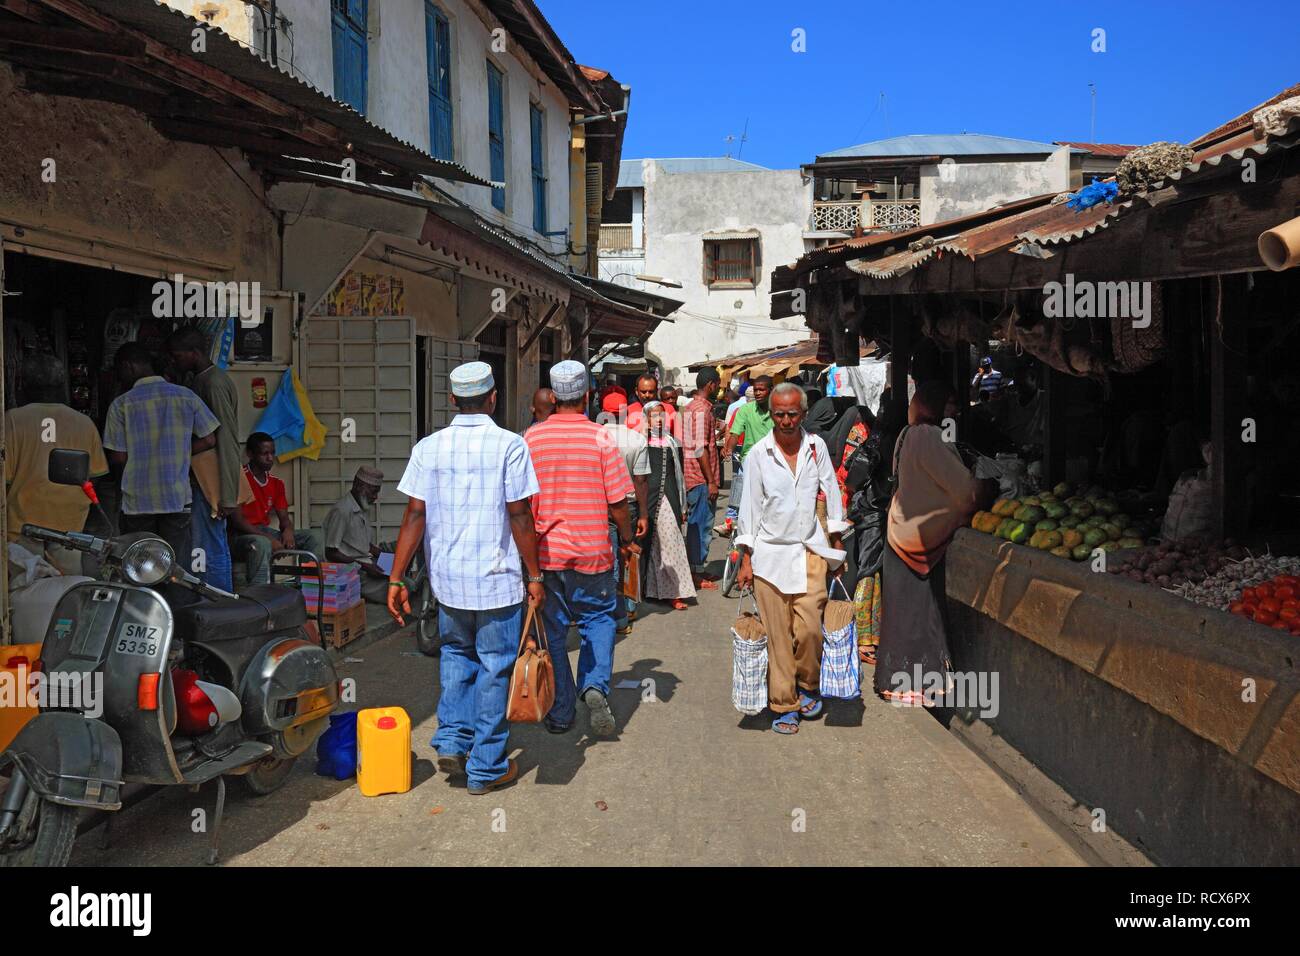 Scène de rue, Zanzibar, Tanzania, Africa Banque D'Images